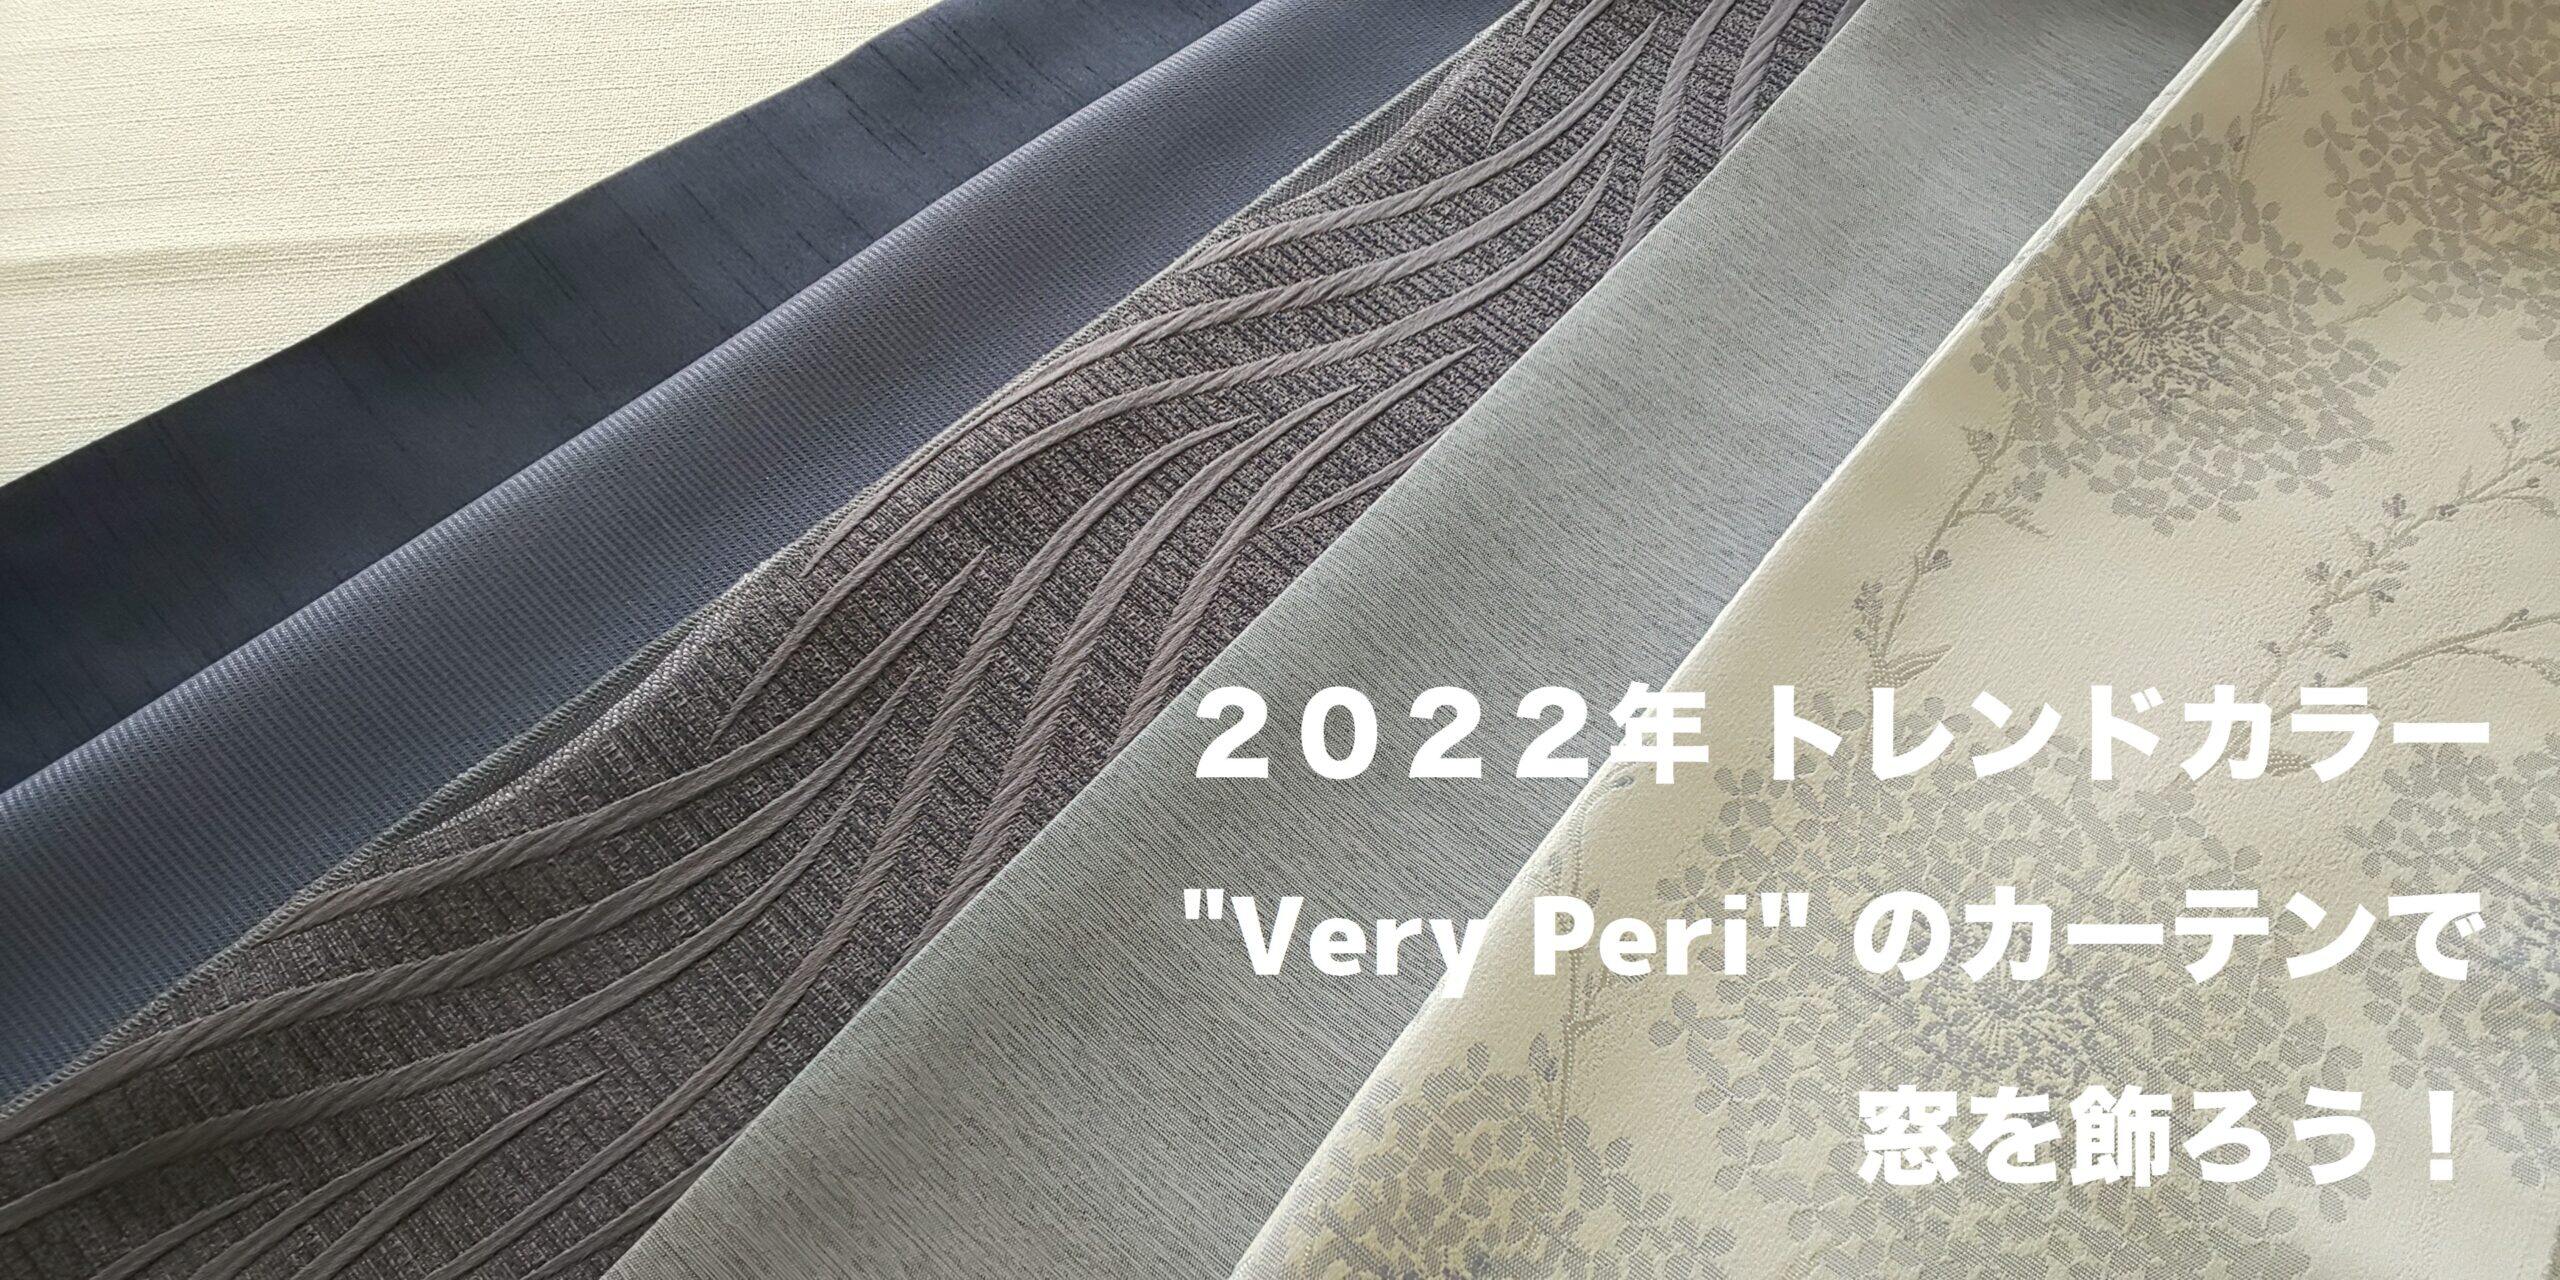 2022年「パントン・カラー・オブ・ザ・イヤー」”Very Peri”のカーテンで窓を飾ろう！